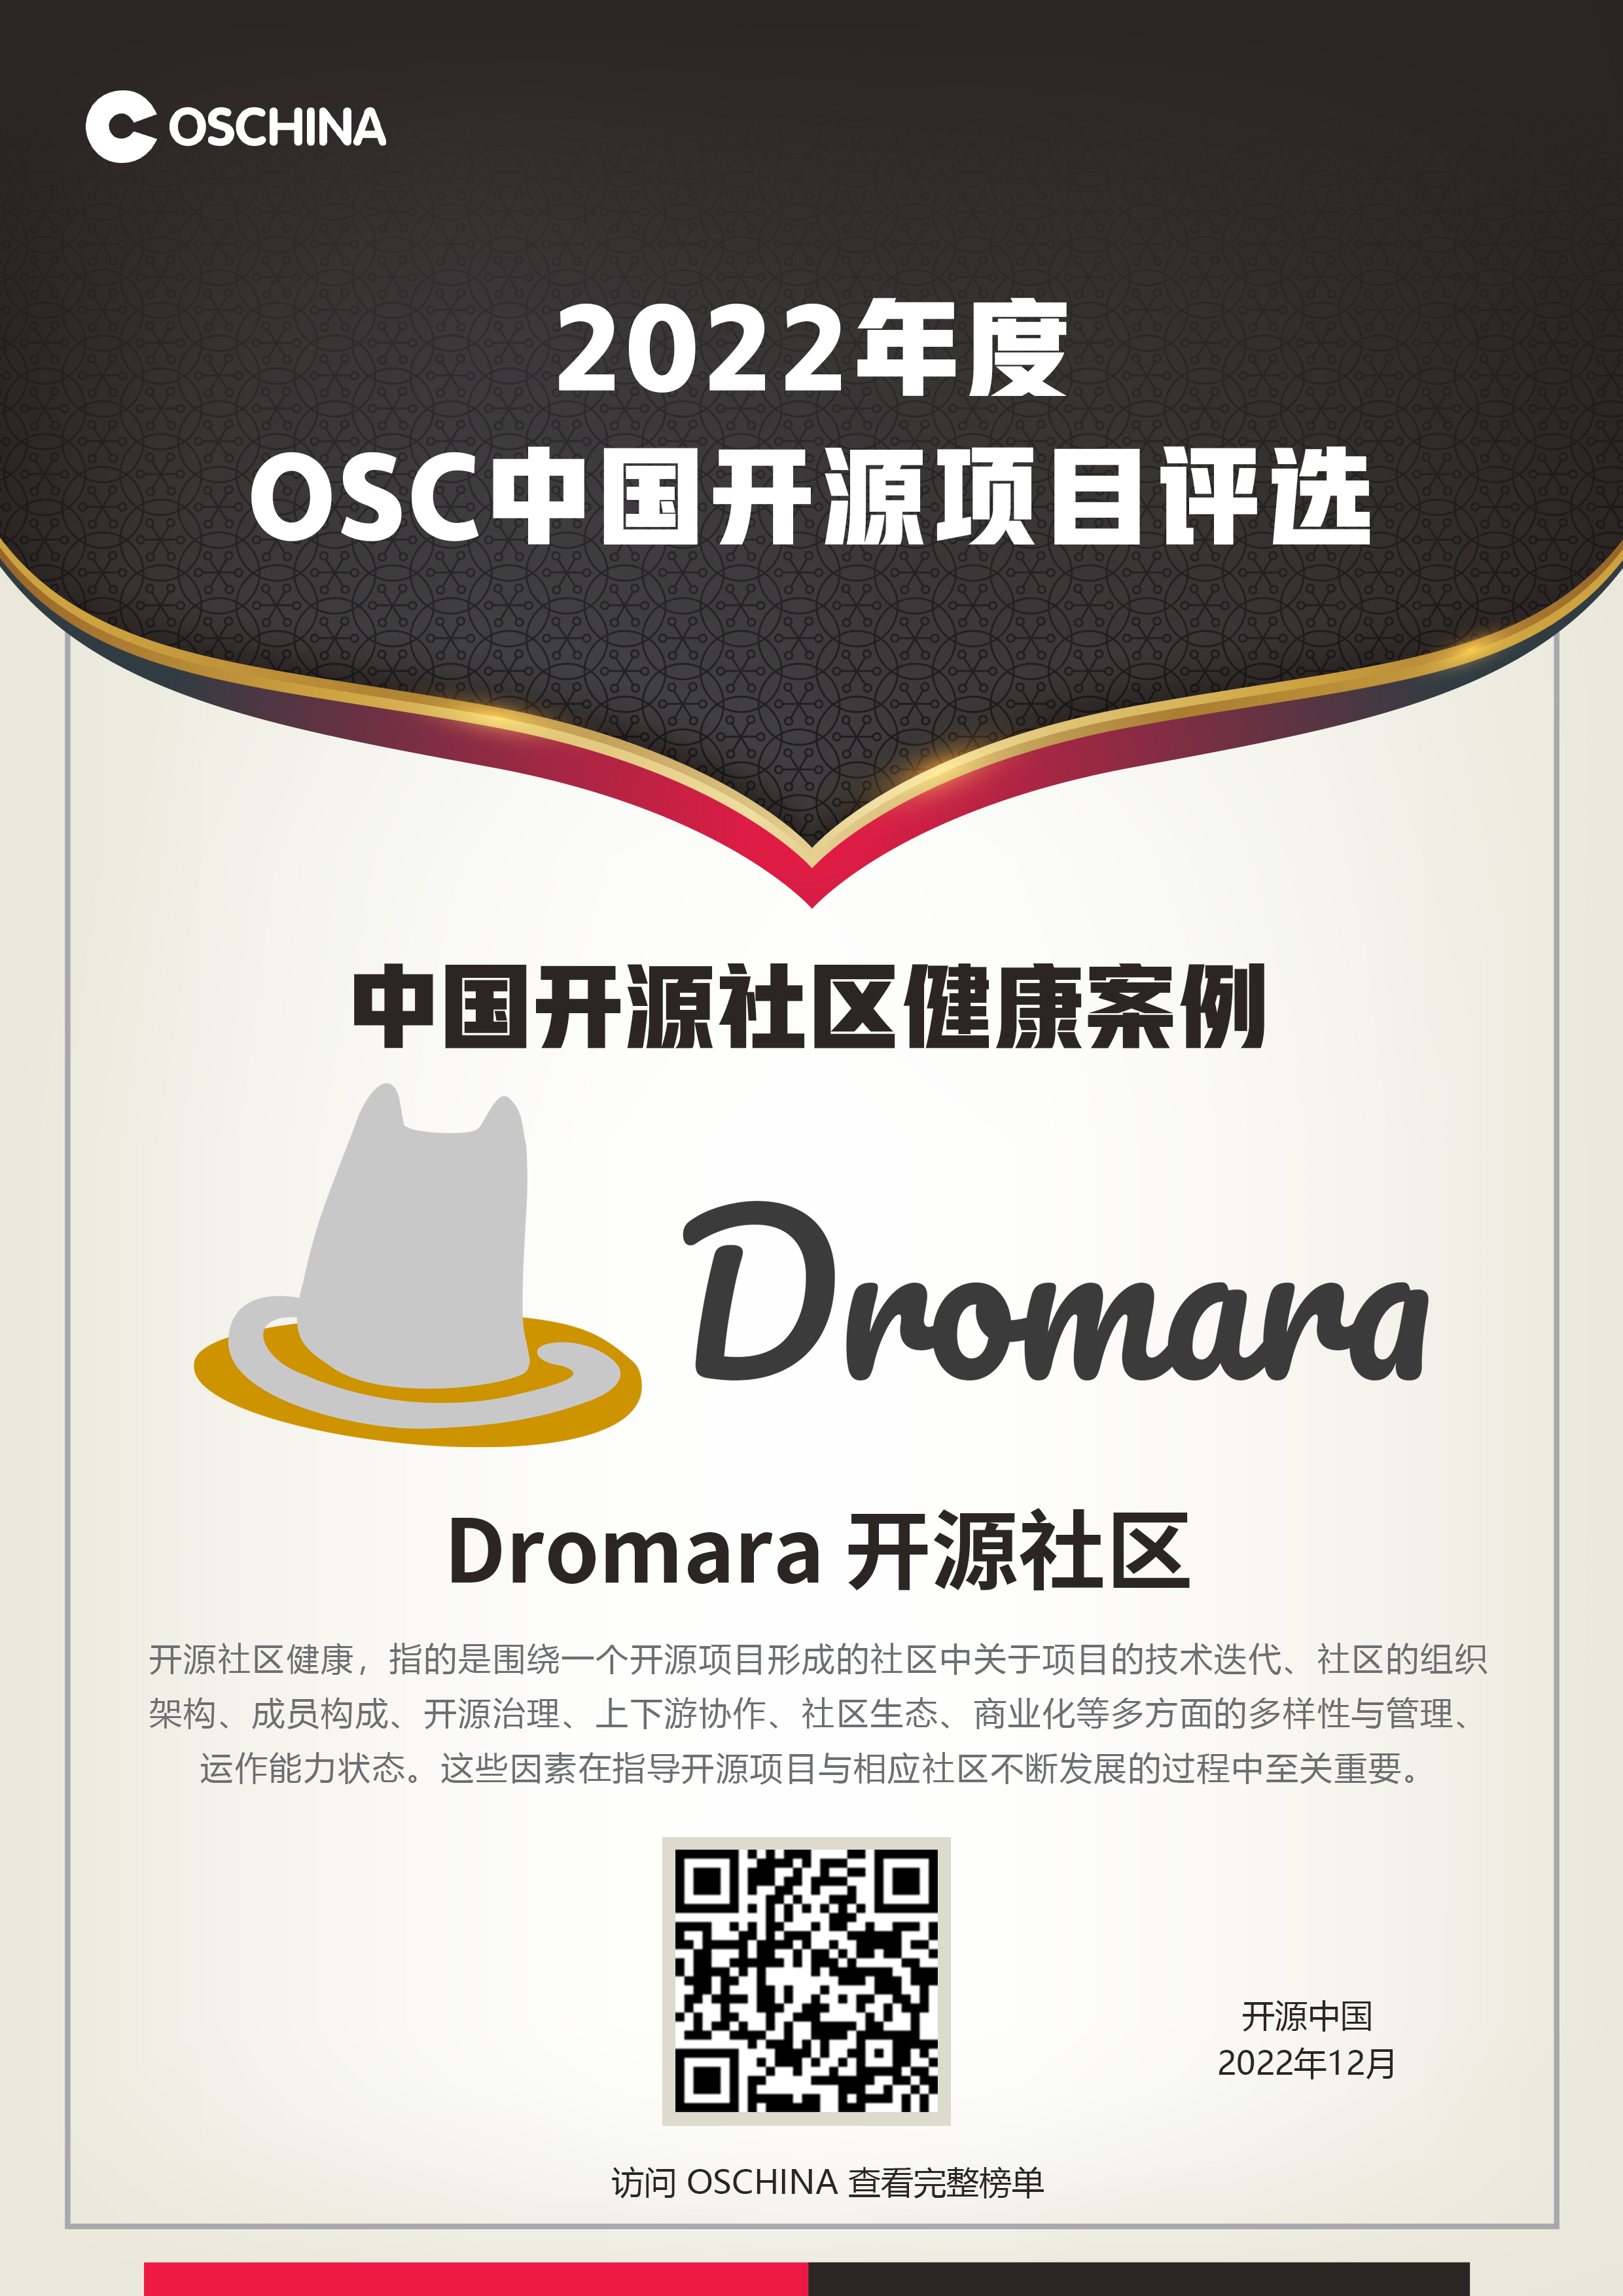 2022年OSChina中国开源项目评选，荣获中国开源社区健康案例